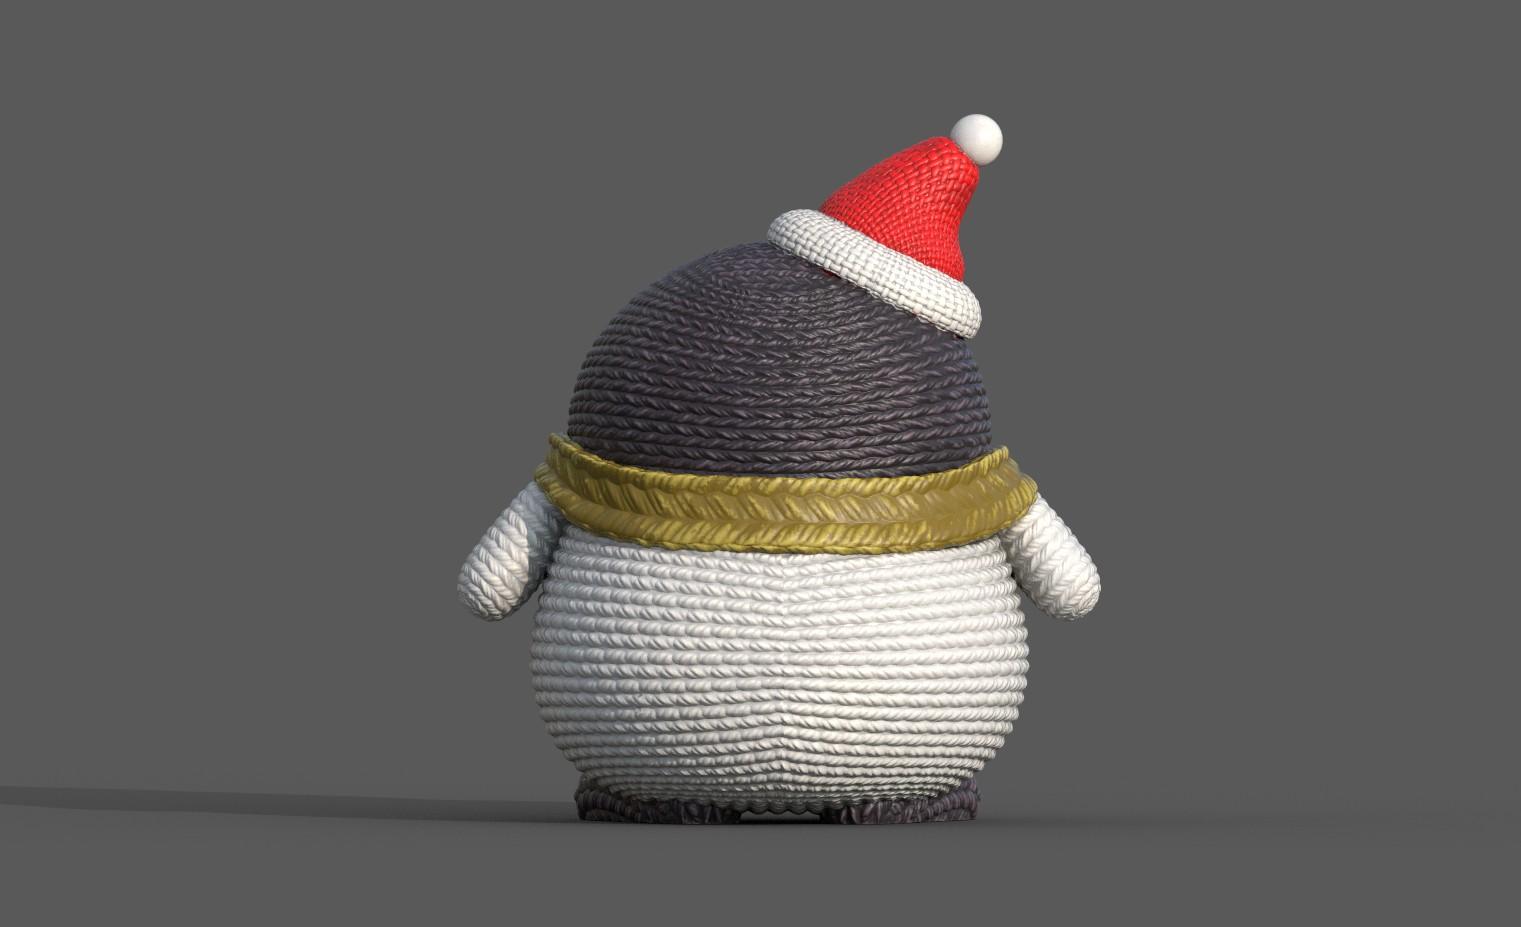 Crochet Penguin 2 3d model